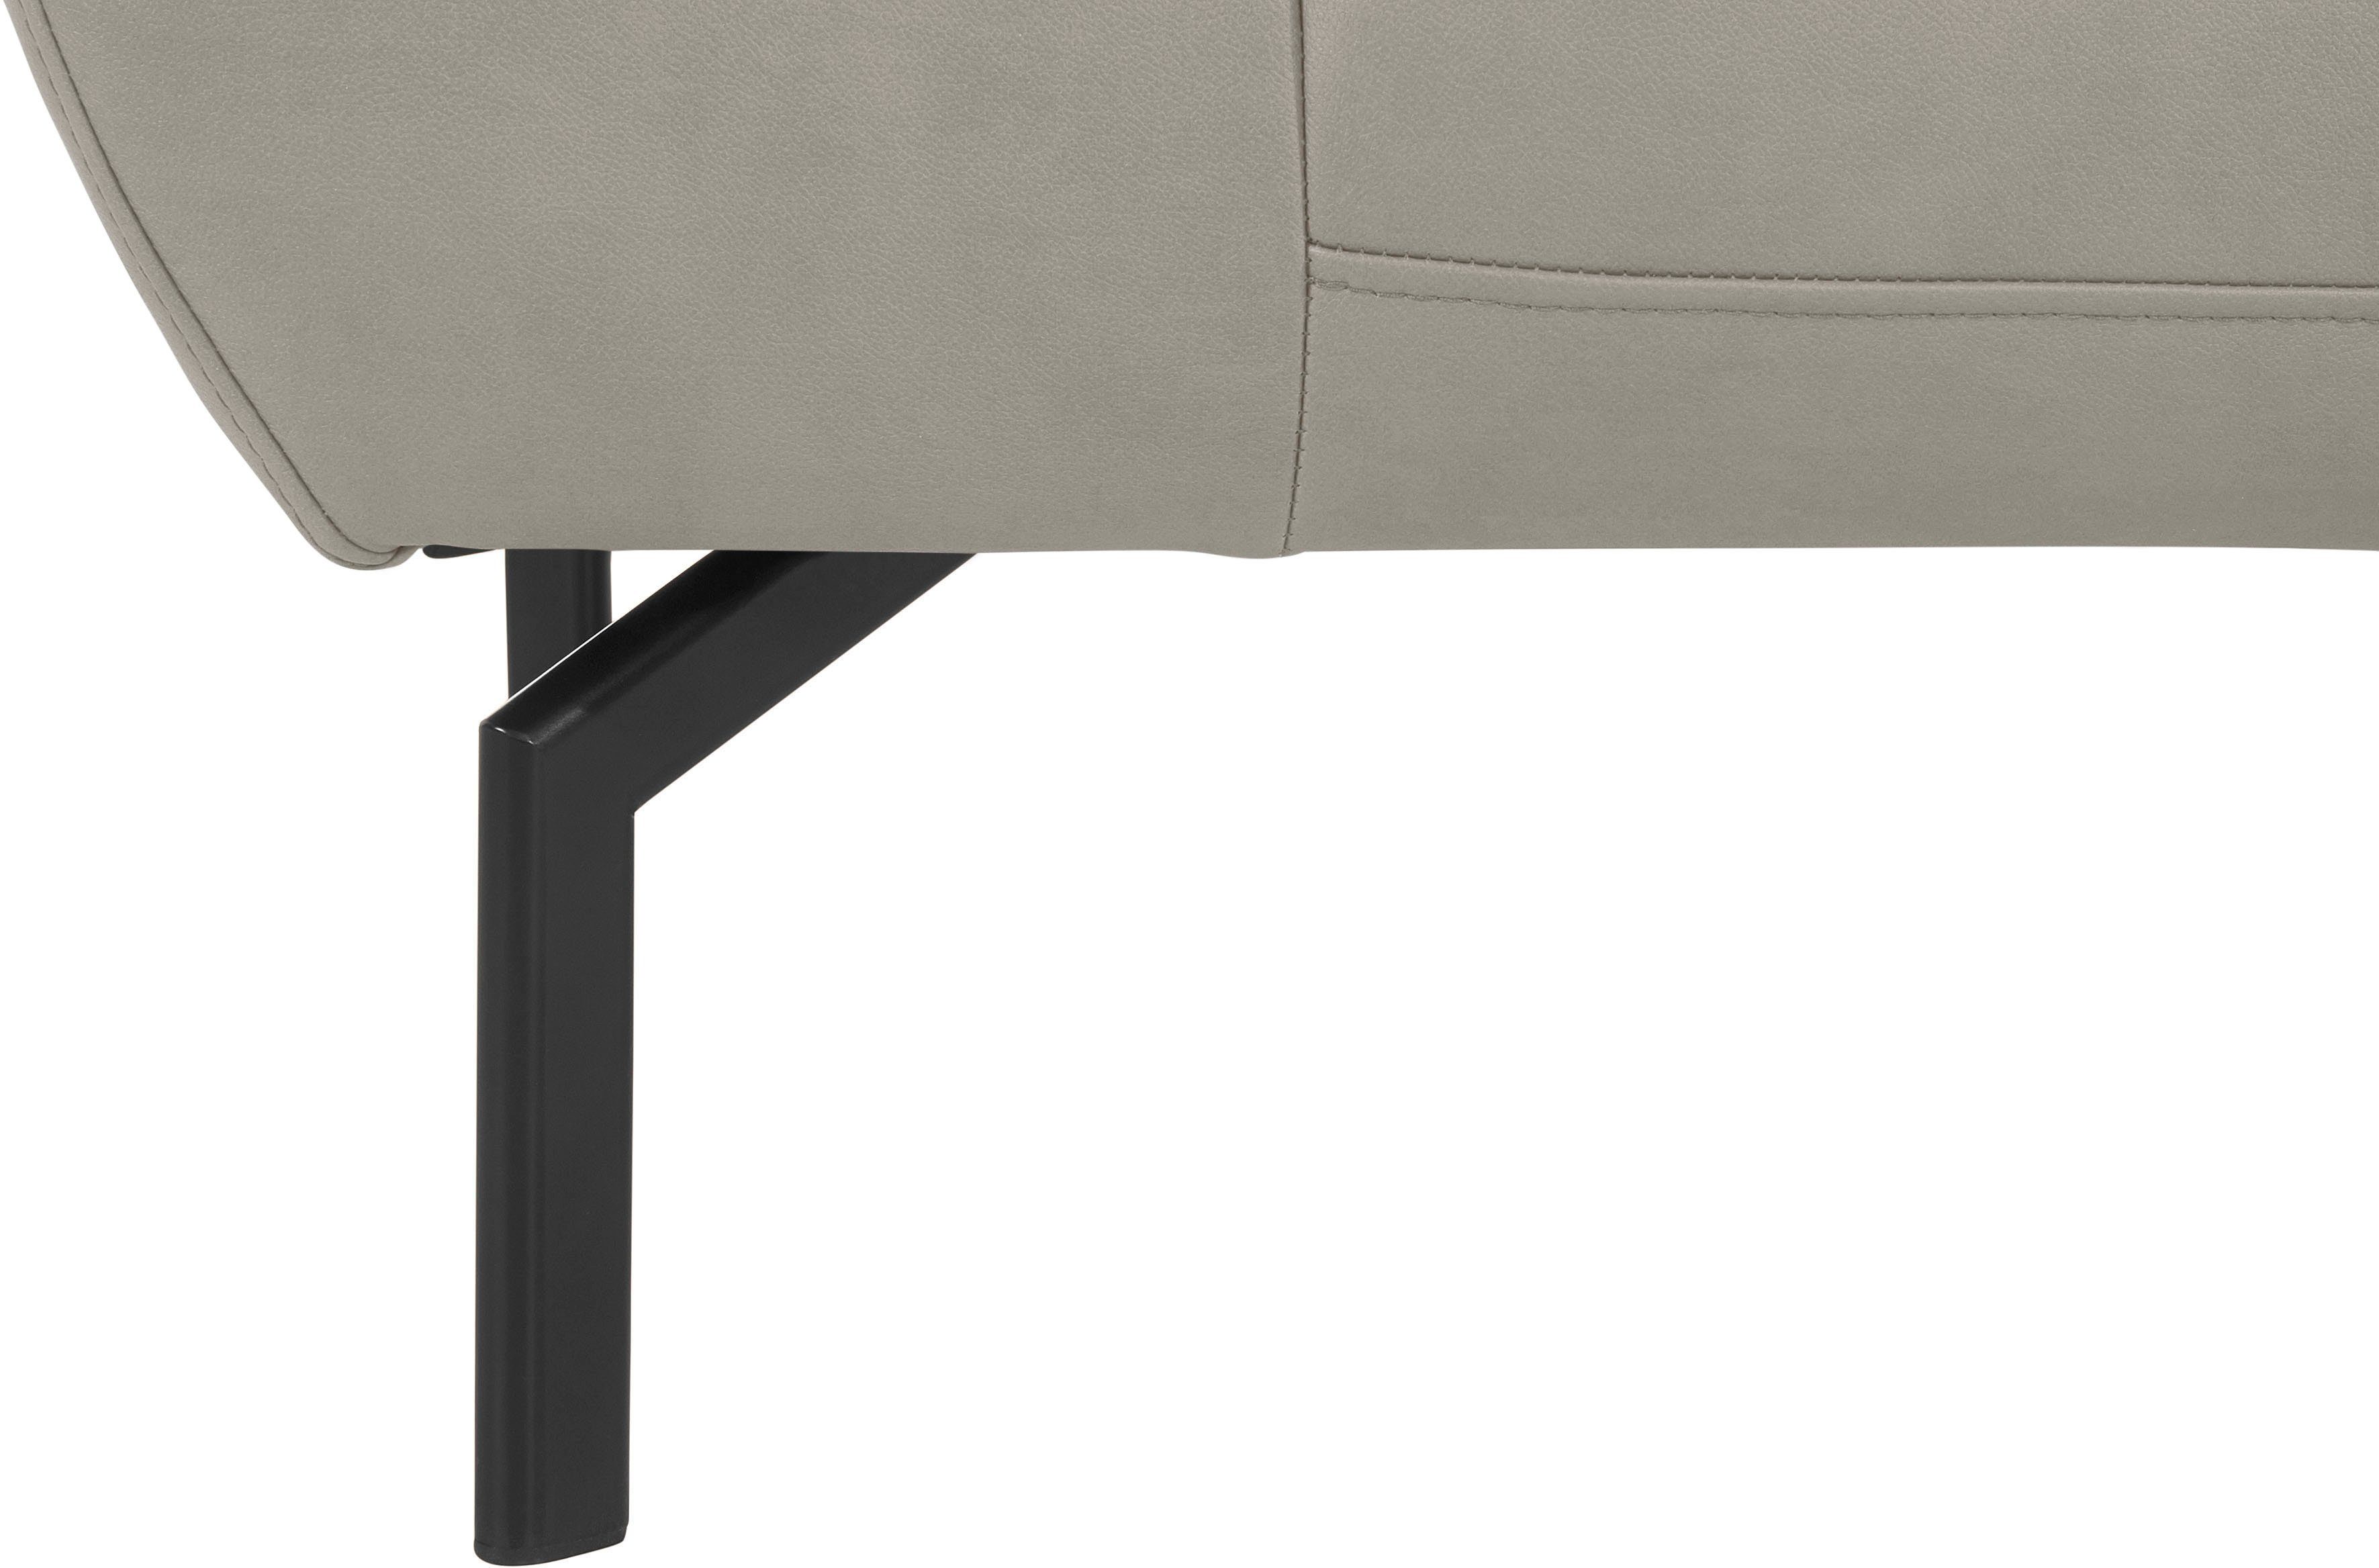 Style mit in Luxus-Microfaser Trapino Rückenverstellung, wahlweise Lederoptik Luxus, of 2-Sitzer Places